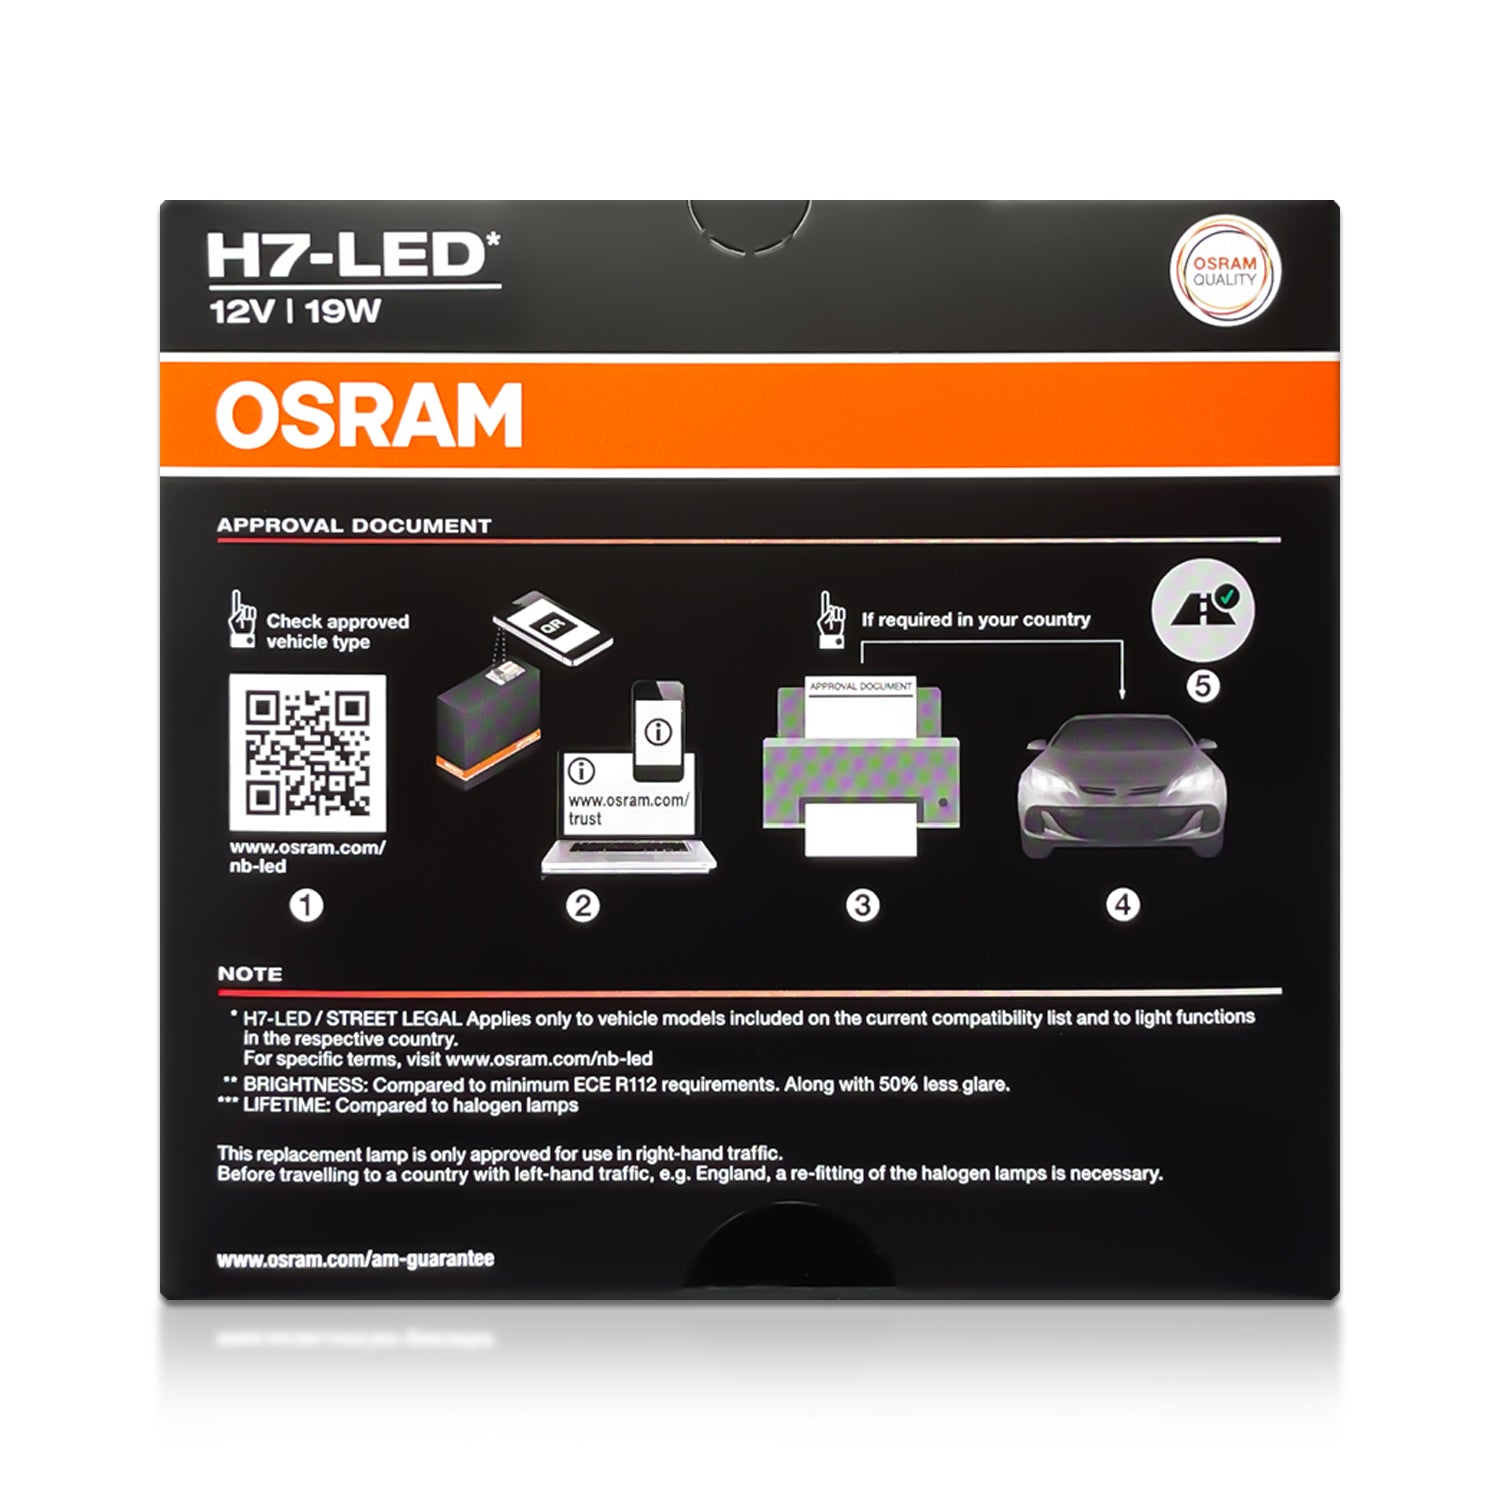 LED LAMP H7 OSRAM NIGHT BREAKER LED 64210DWNB 12V PX26d FS2